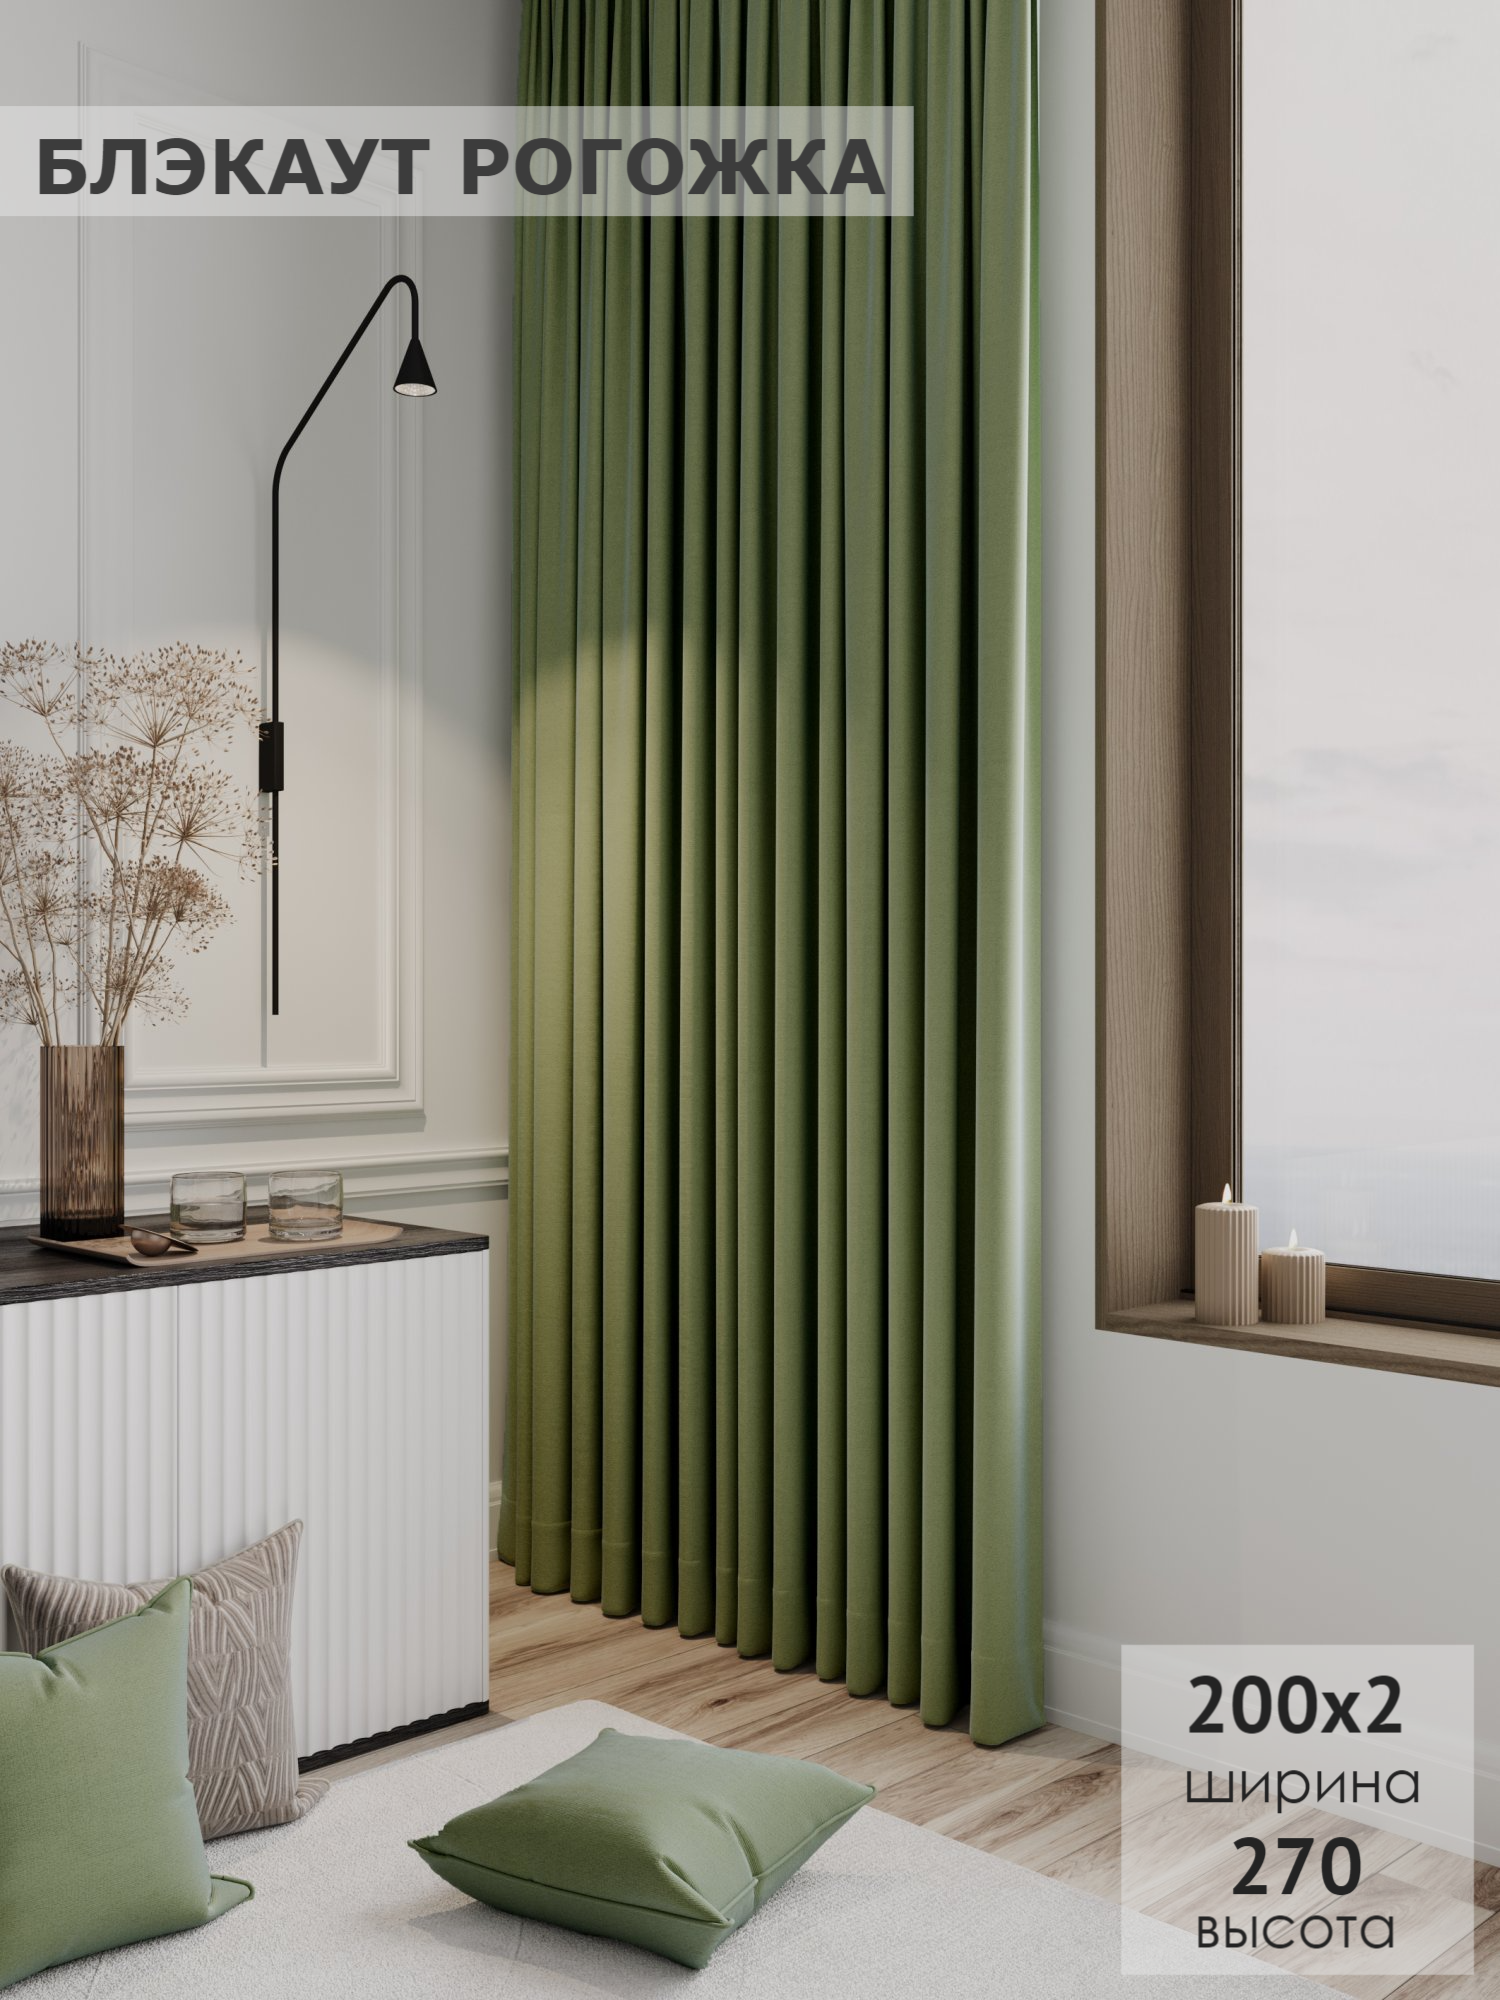 Комплект штор KS interior textile цвет светло-зеленый Блэкаут рогожка 200х270 2шт